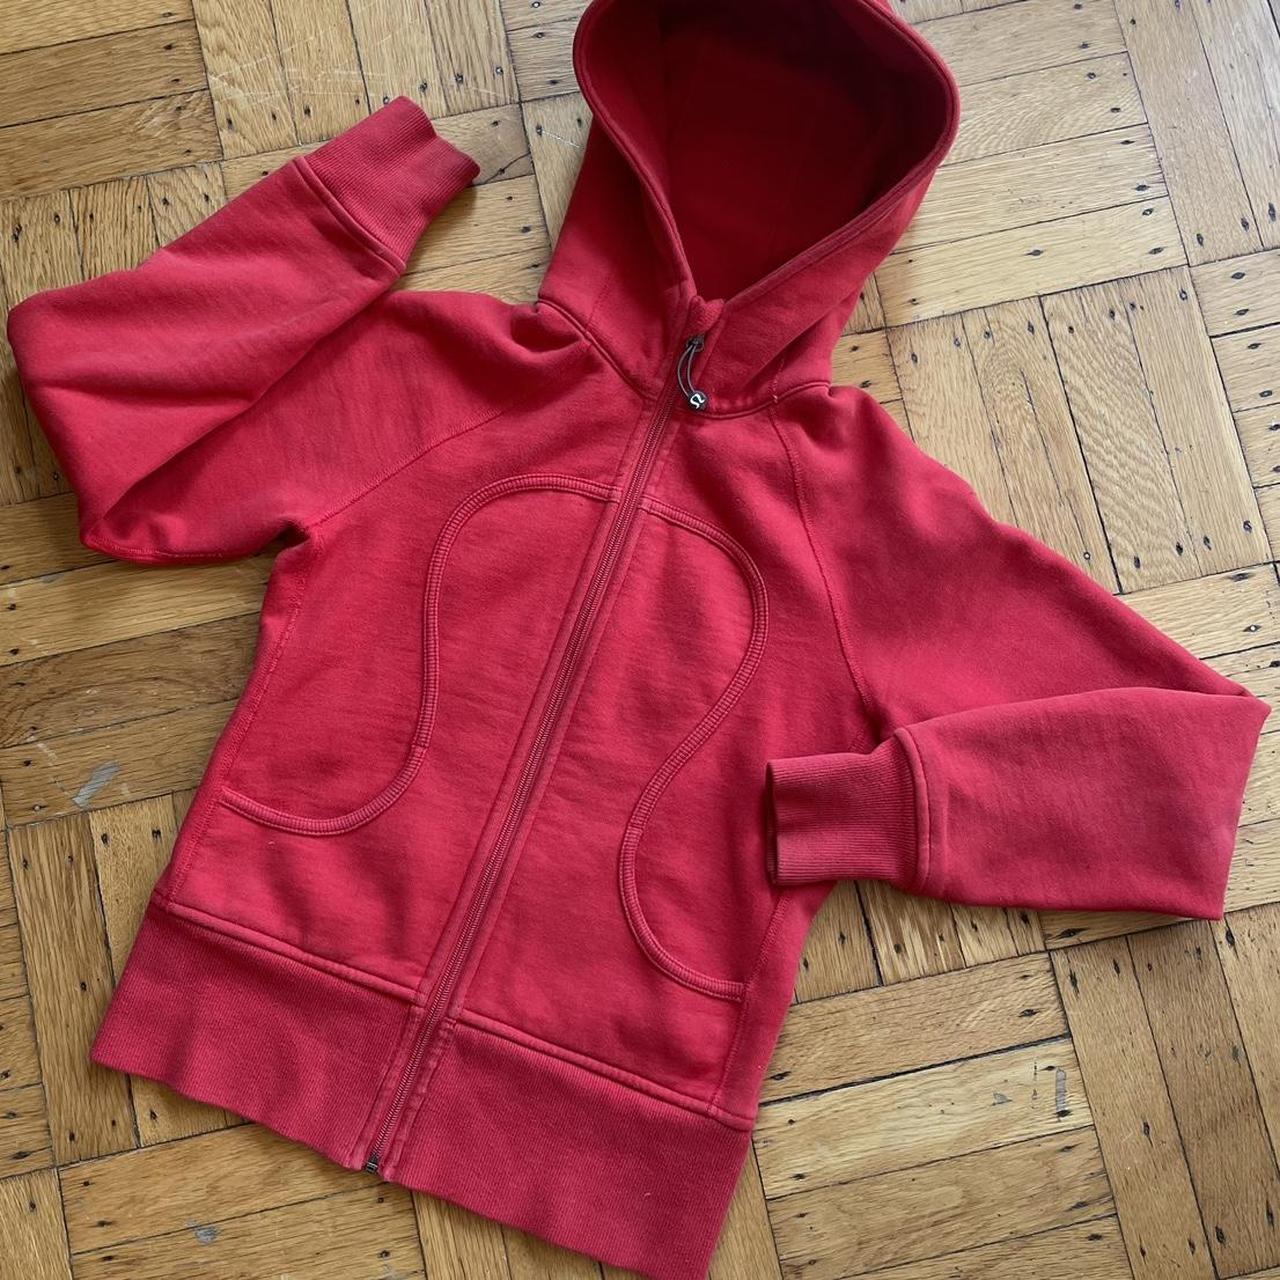 Lululemon athletica vintage zip up hoodie